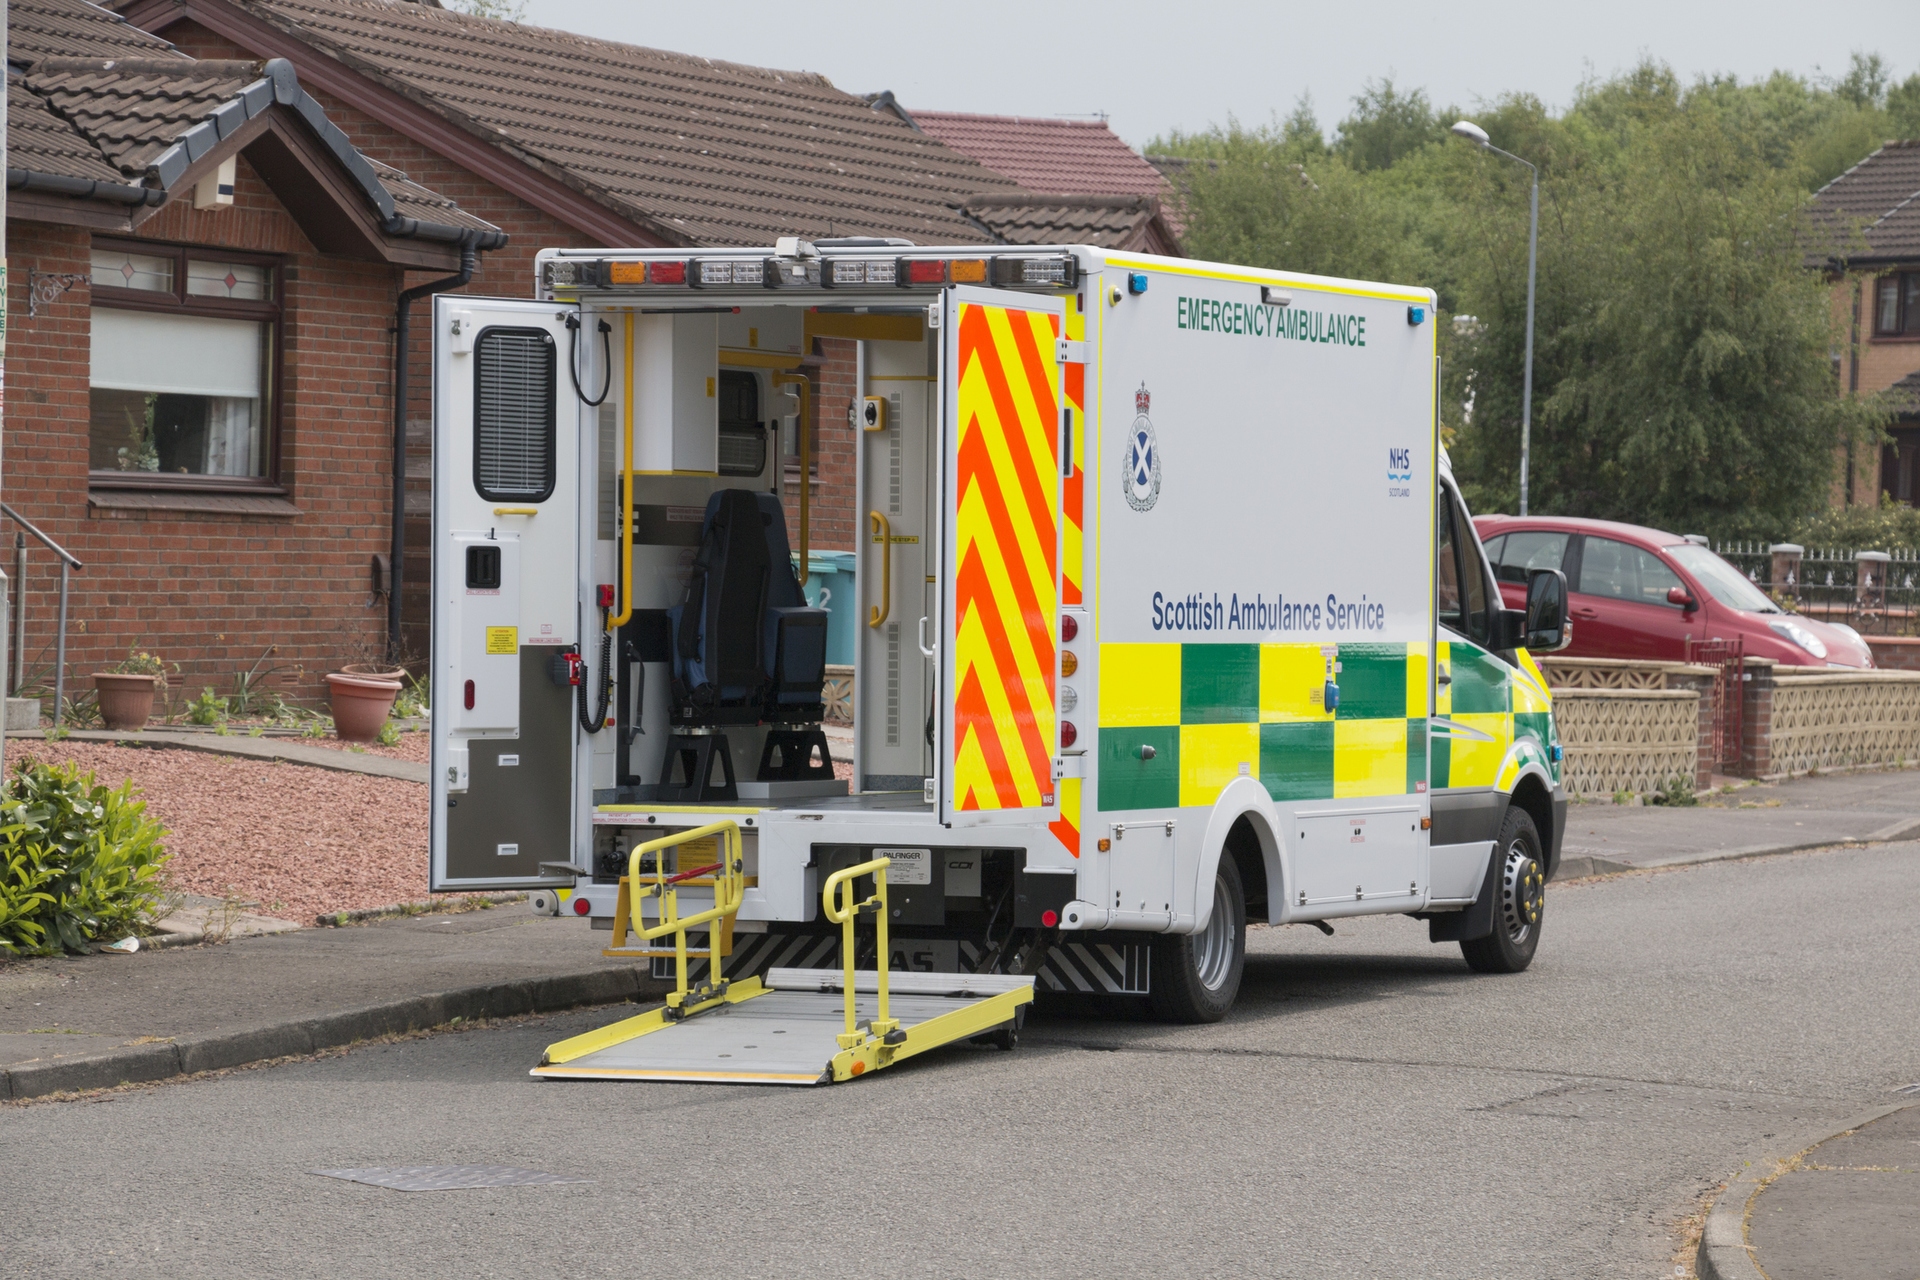 Stock image of ambulance.